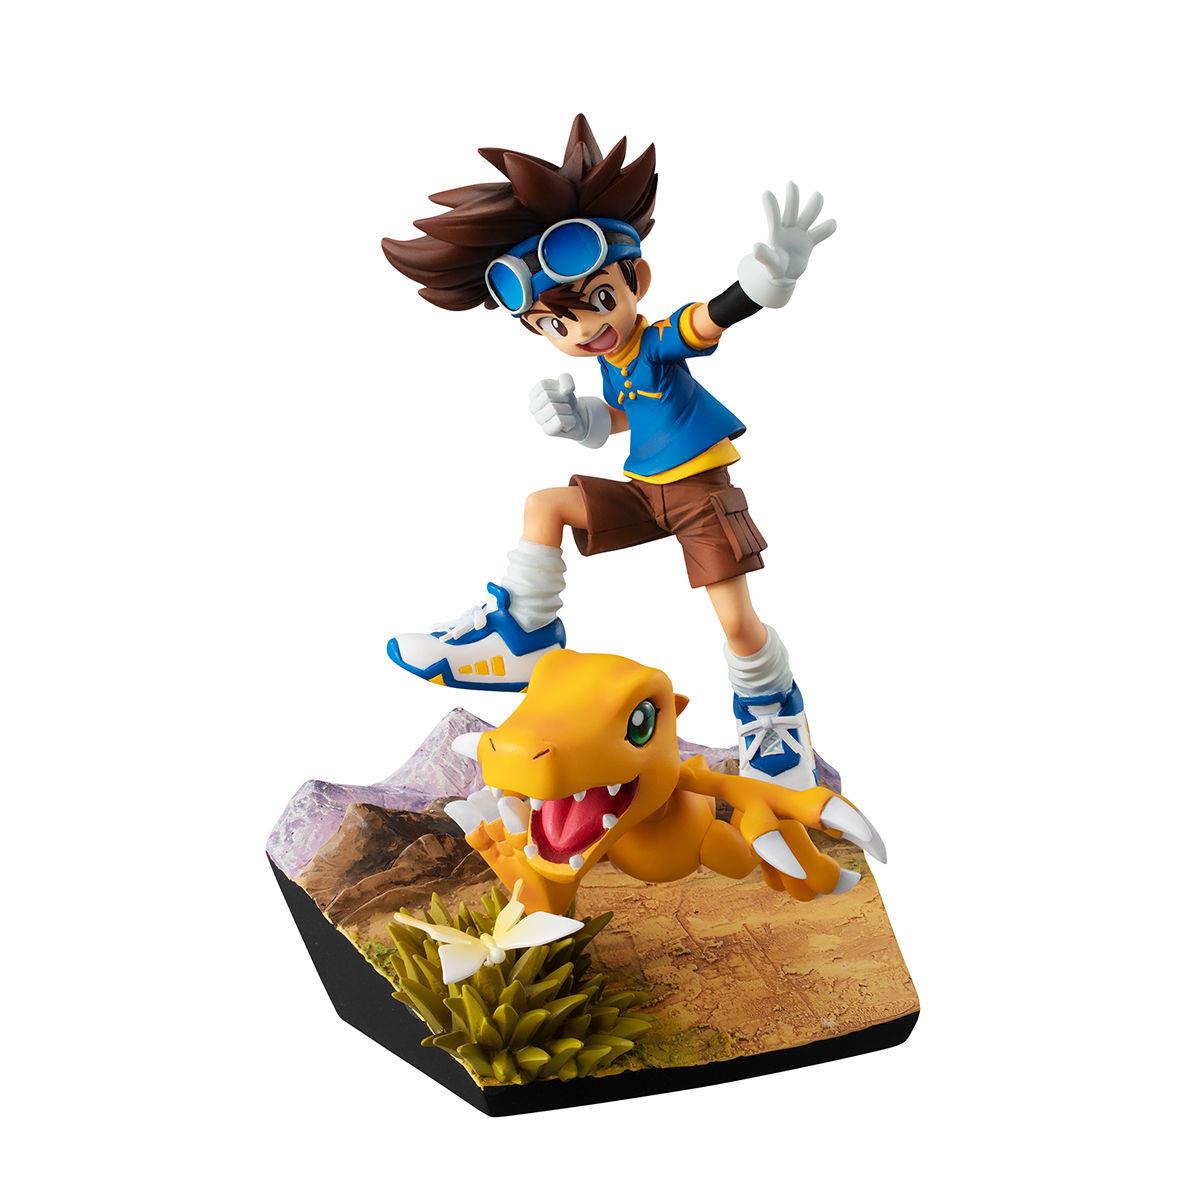 Digimon Adventure: Taichi and Agumon G.E.M. 20th Anniversary Figure